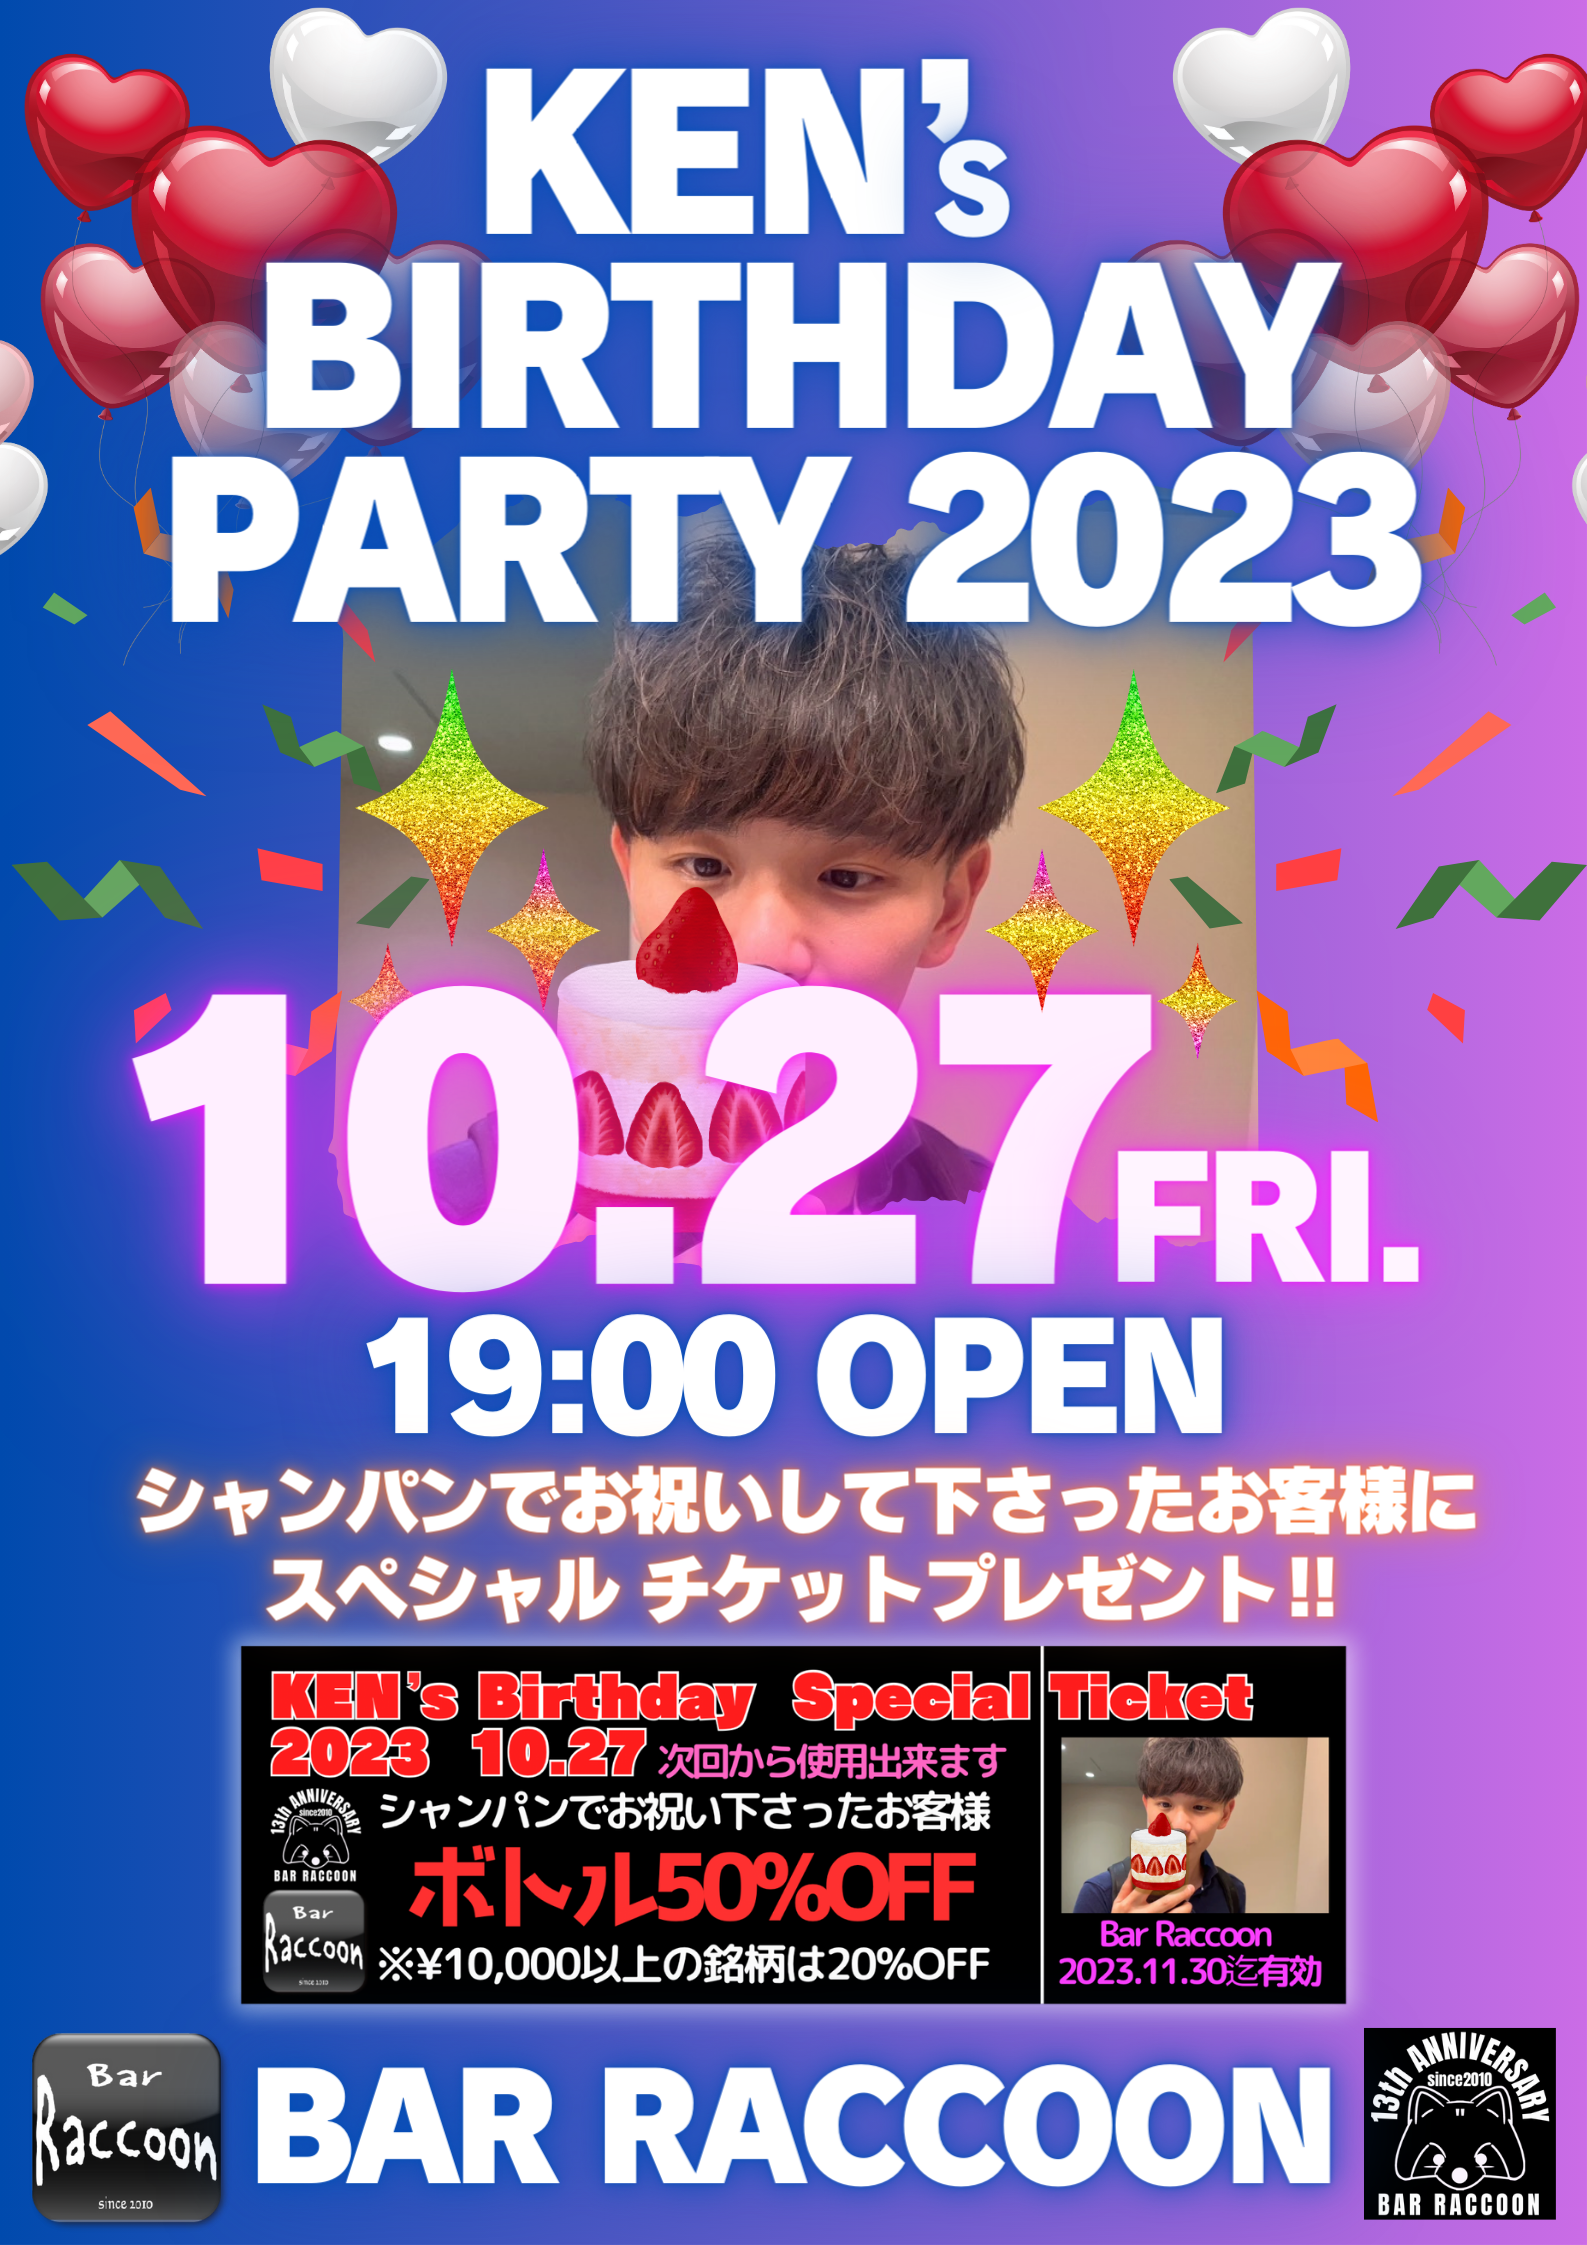 Ken‘s Birthday Party2023 in 大宮Bar Raccoon